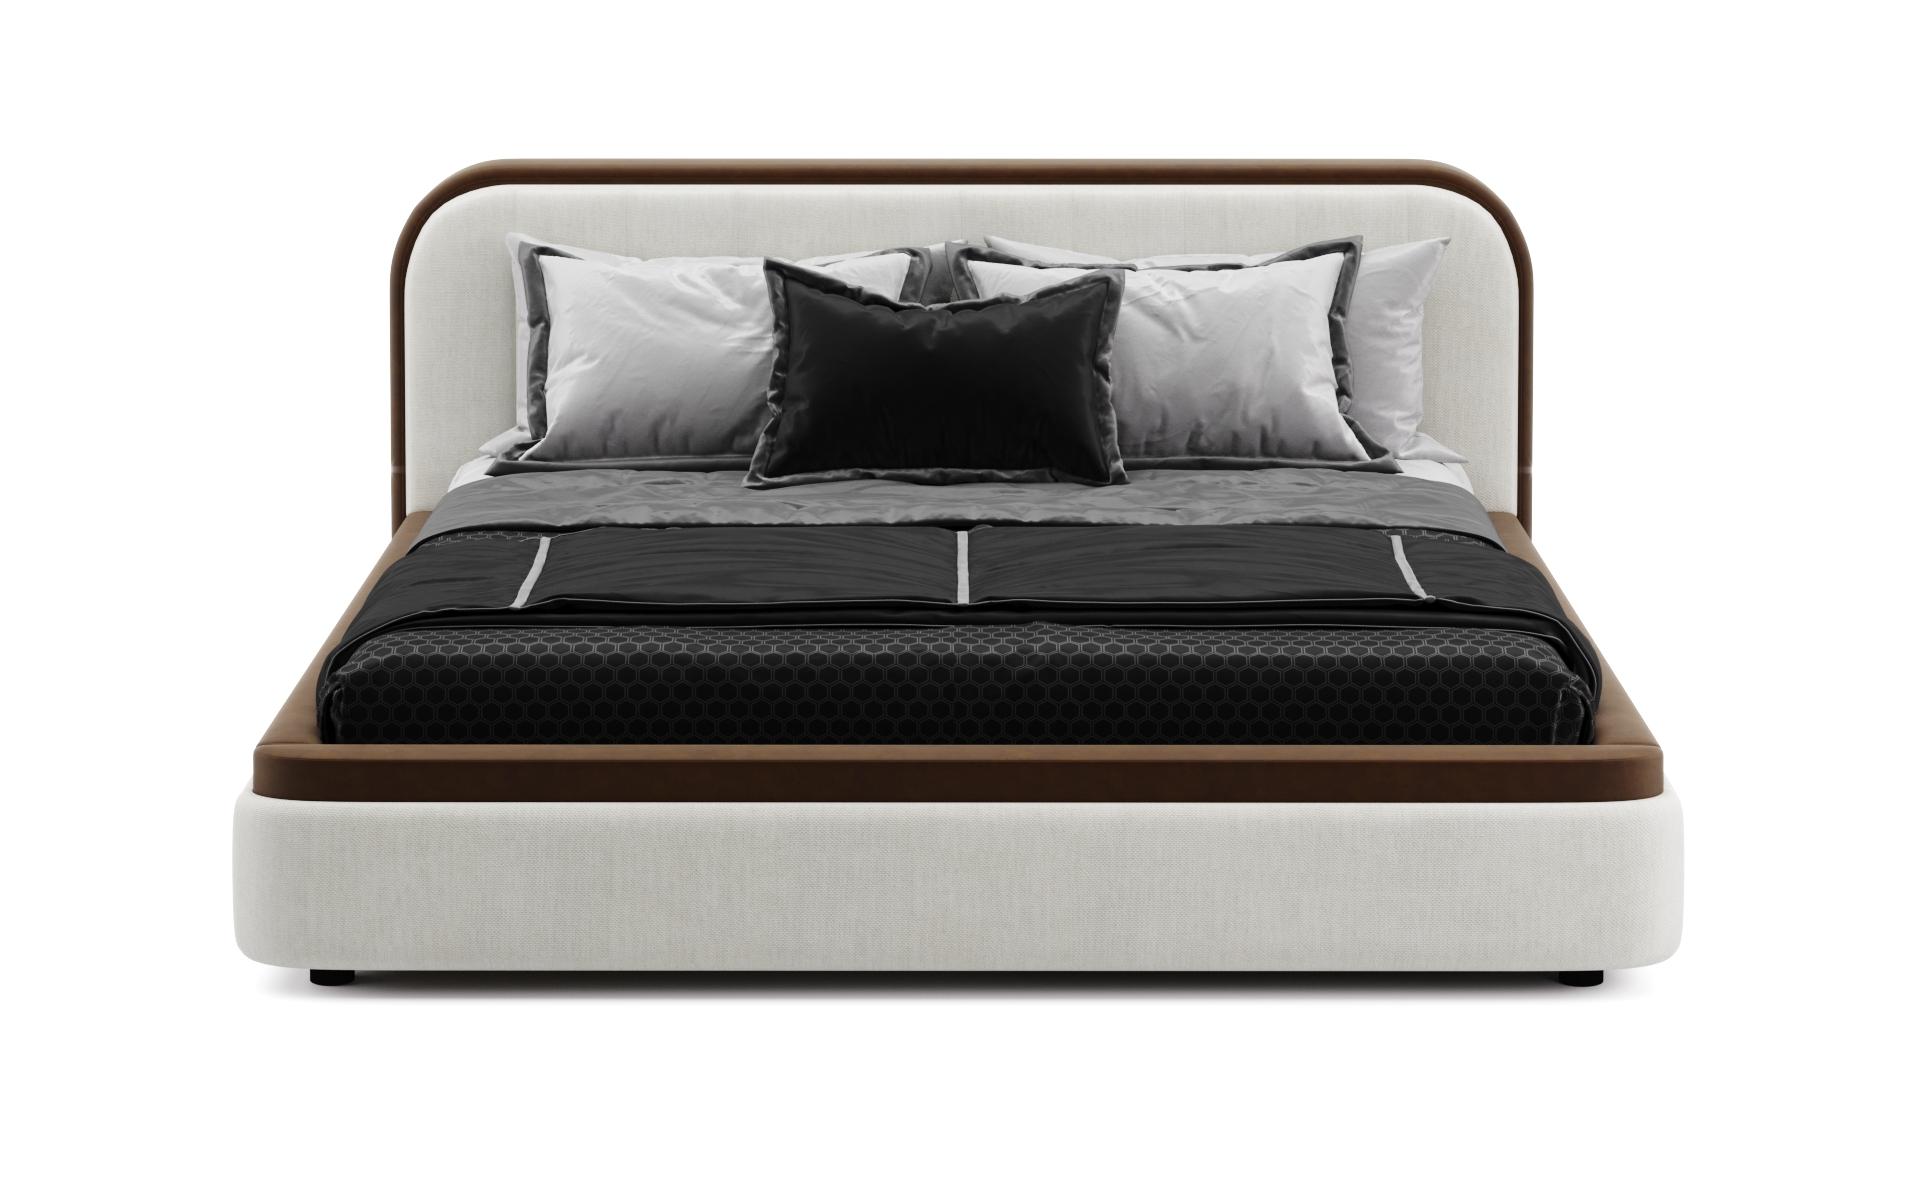 Cosmopolitan Modern Brown Beige Leather Storage Bed,Sofacraft